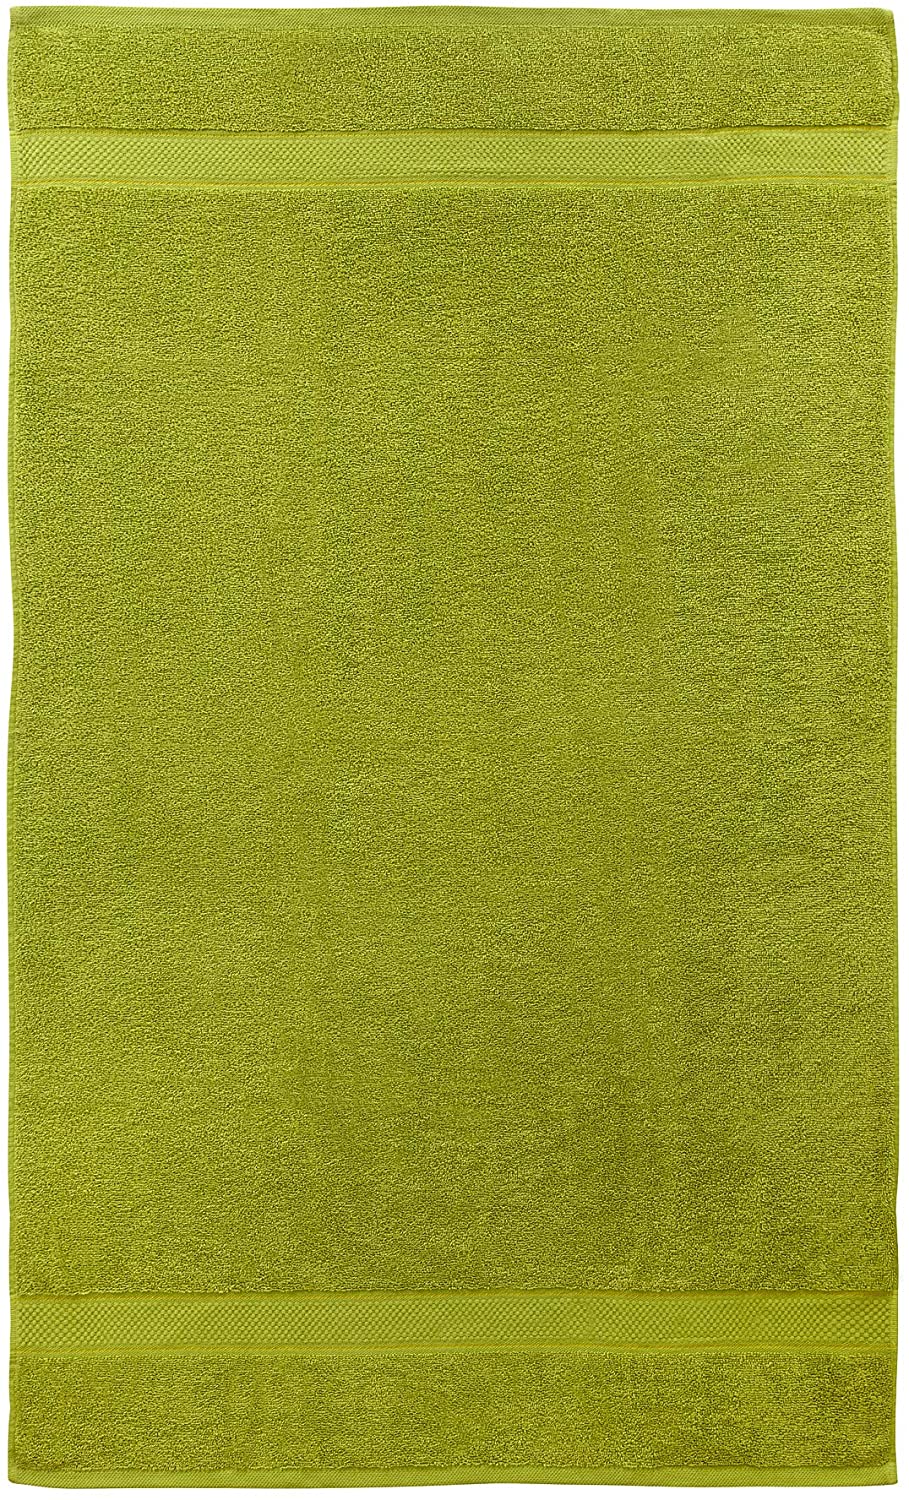 2 Pcs Bath Cotton Towel Bale Set Olive Plain